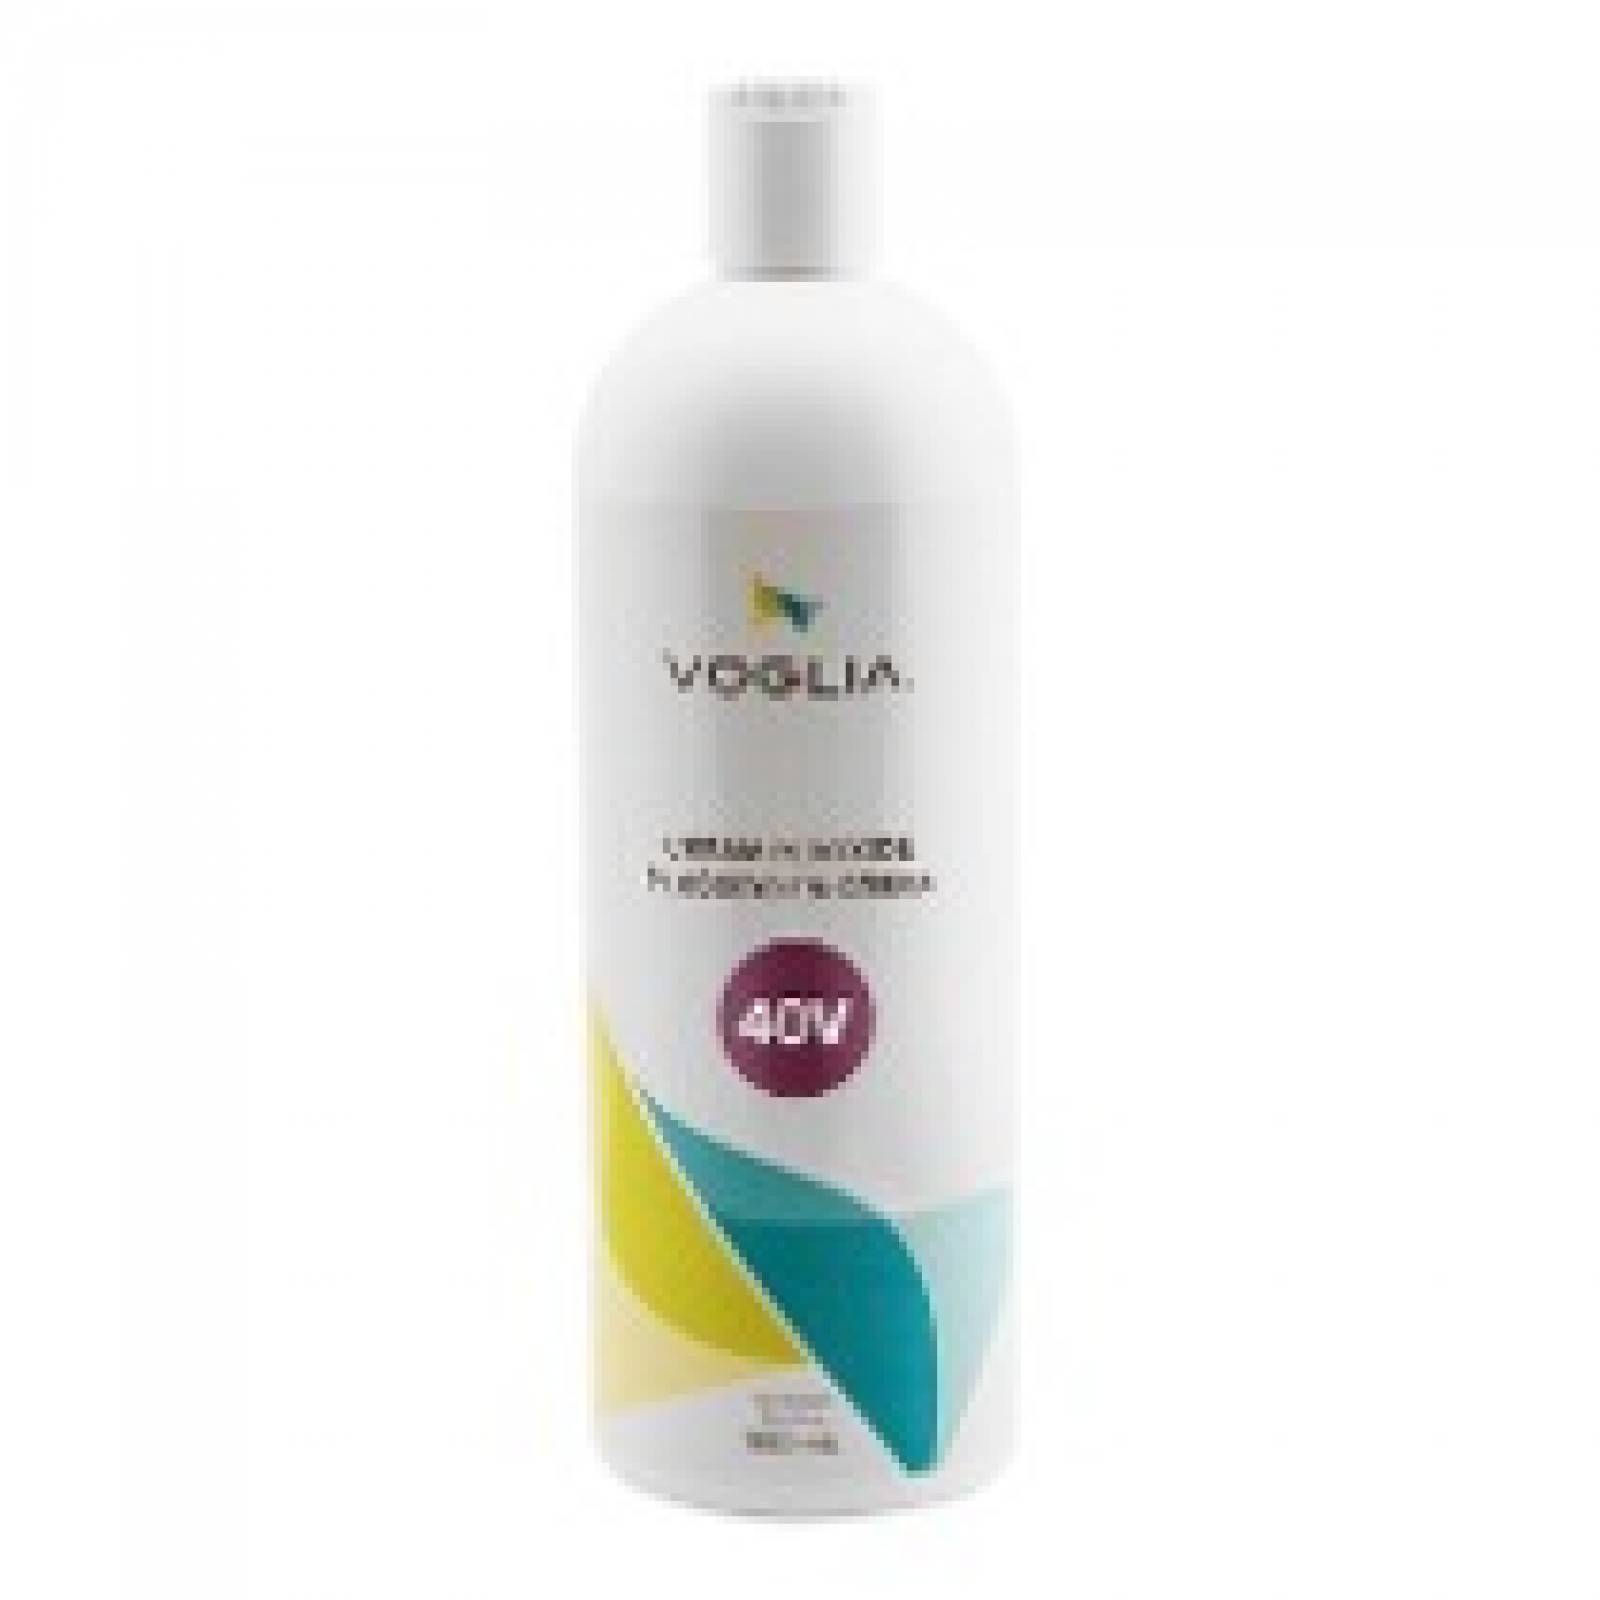 PerÃ³xido en crema 40 V, Tratamiento para decoloraciÃ³n de cabello,  960 ml, Voglia.